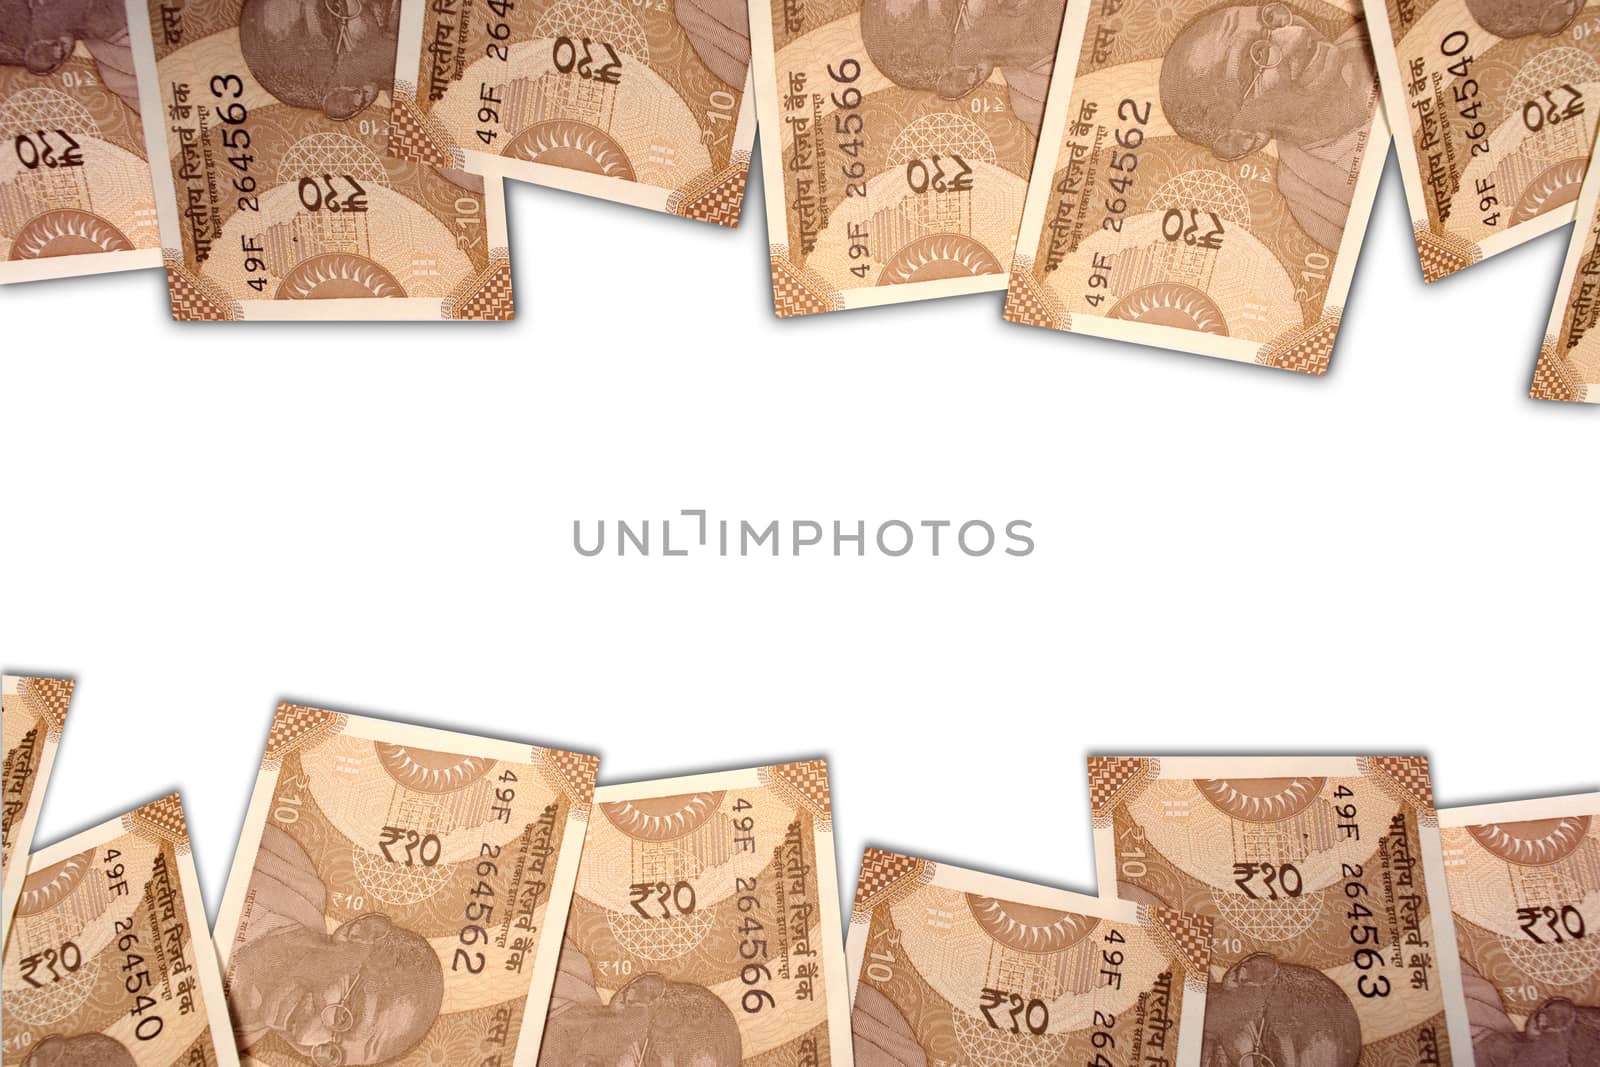 New Indian 10 rupee notes on white isolated background. by lakshmiprasad.maski@gmai.com